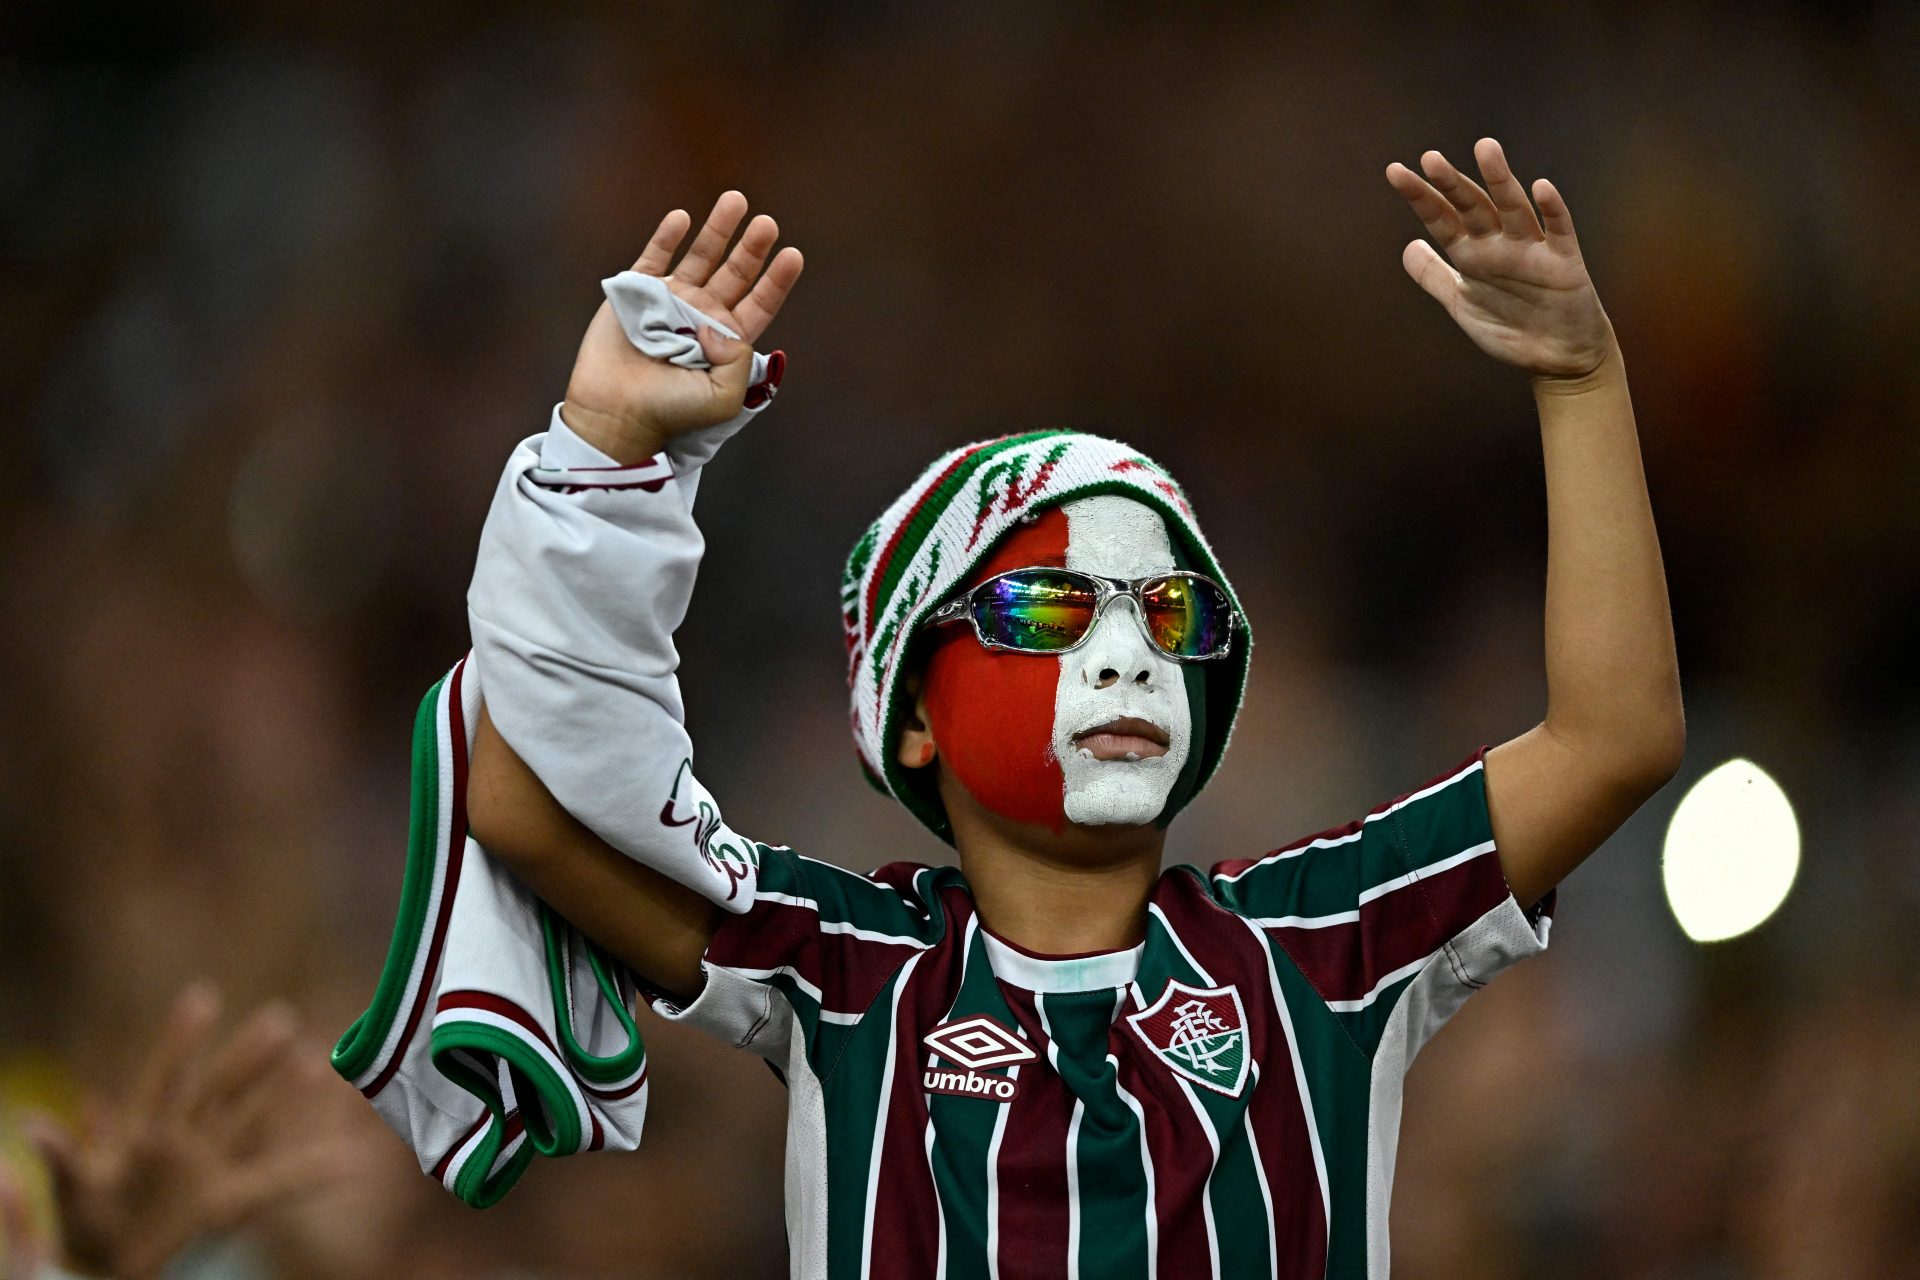 Uma nova era do futebol brasileiro?